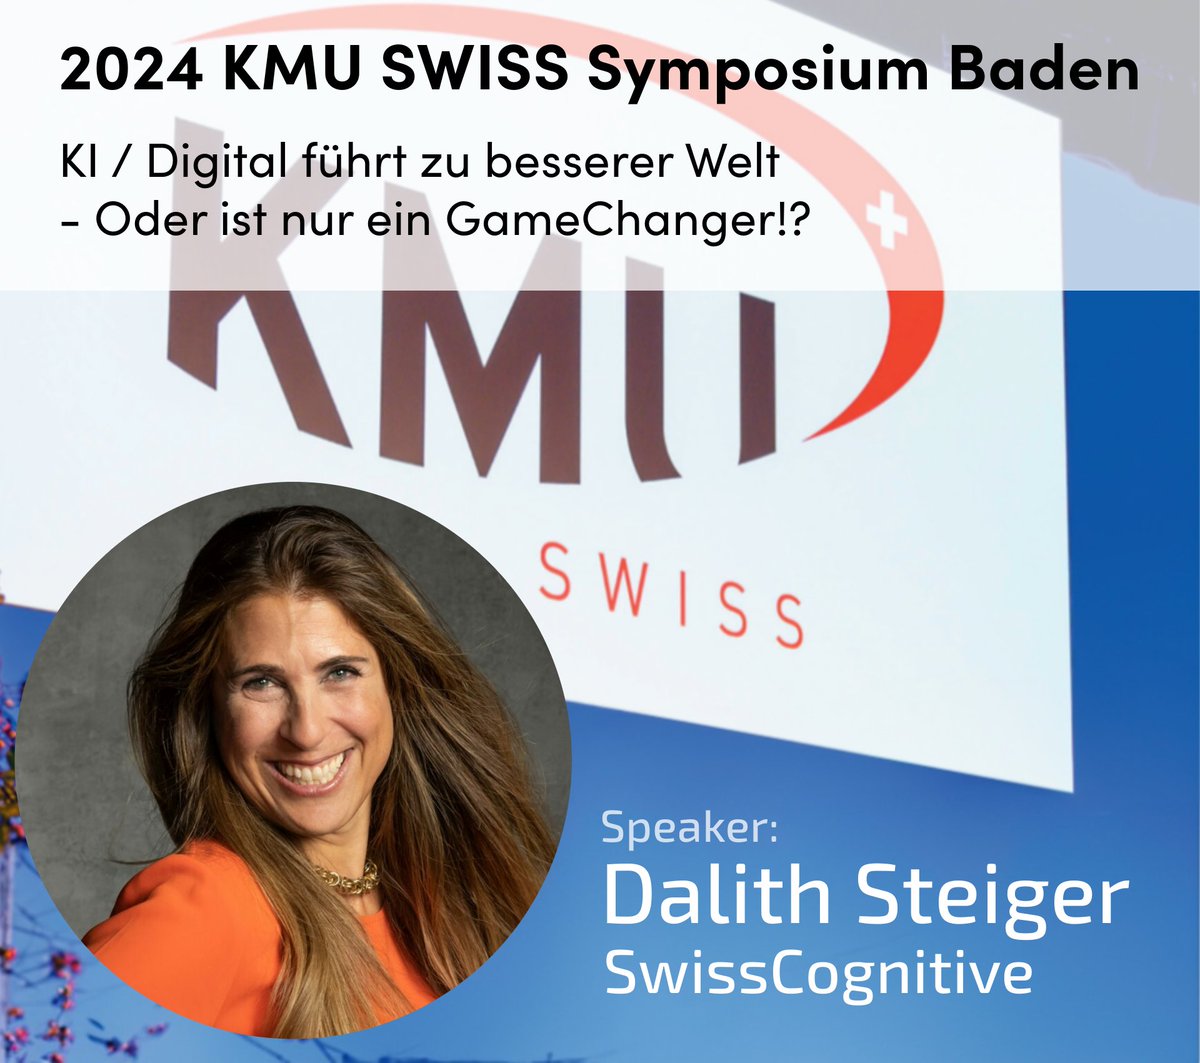 #Digitalisierung ist nur ein Gamechanger ist oder zu einer besseren Welt führt❓ Freue mich auf das #KMU SWISS Symposium am 21. März 2024!🌟 Wir diskutieren die Spannende Einblicke in KI & Digitalisierung erwarten uns 🔗ow.ly/rGeN50QvvBv @KMUSWISSAG #AI #SwissCognitive